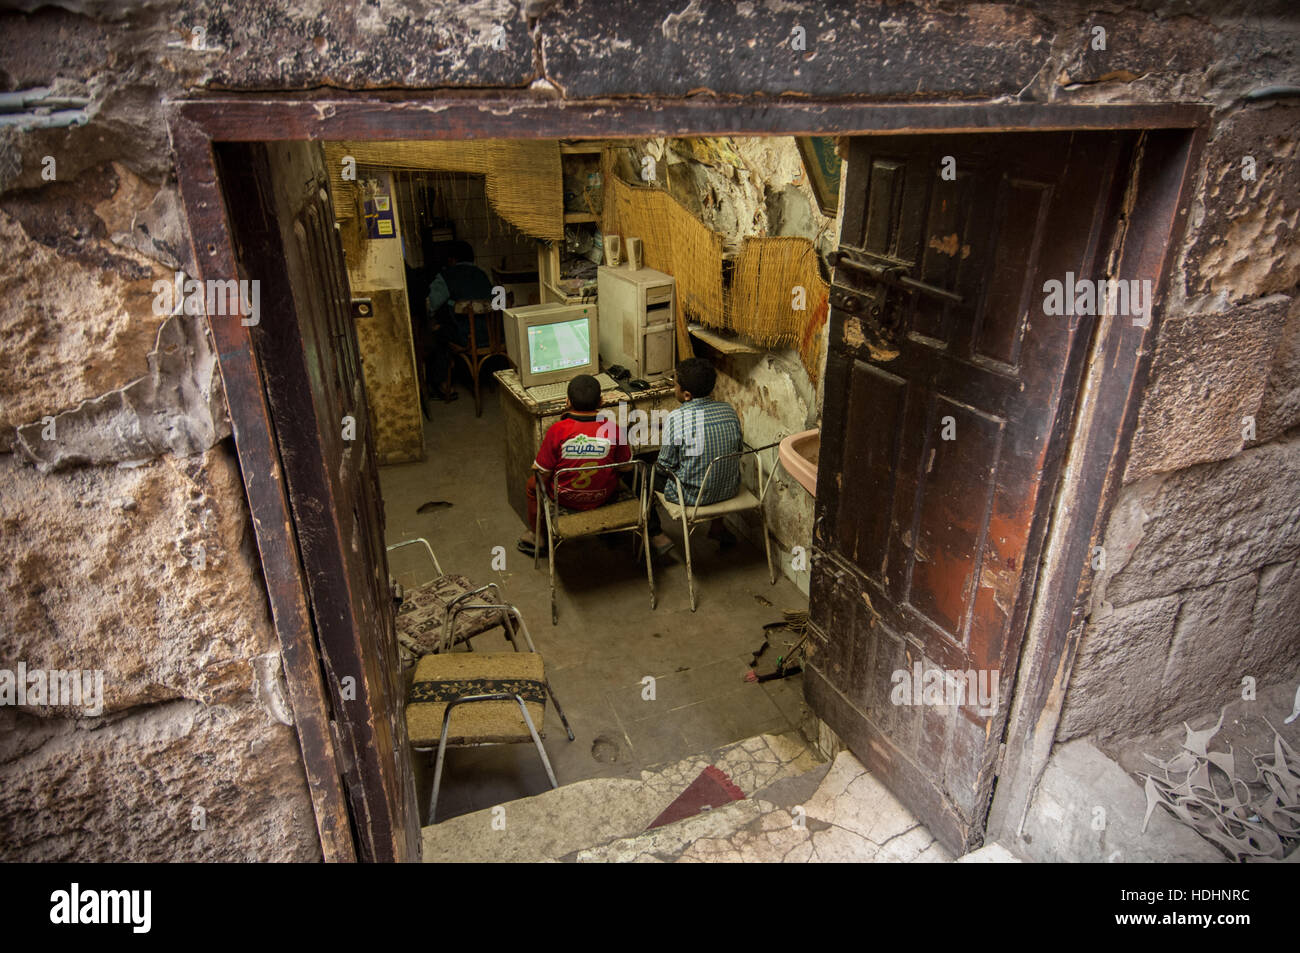 Las calles del barrio islámico de El Cairo y el bazar de Khan el khalili Foto de stock